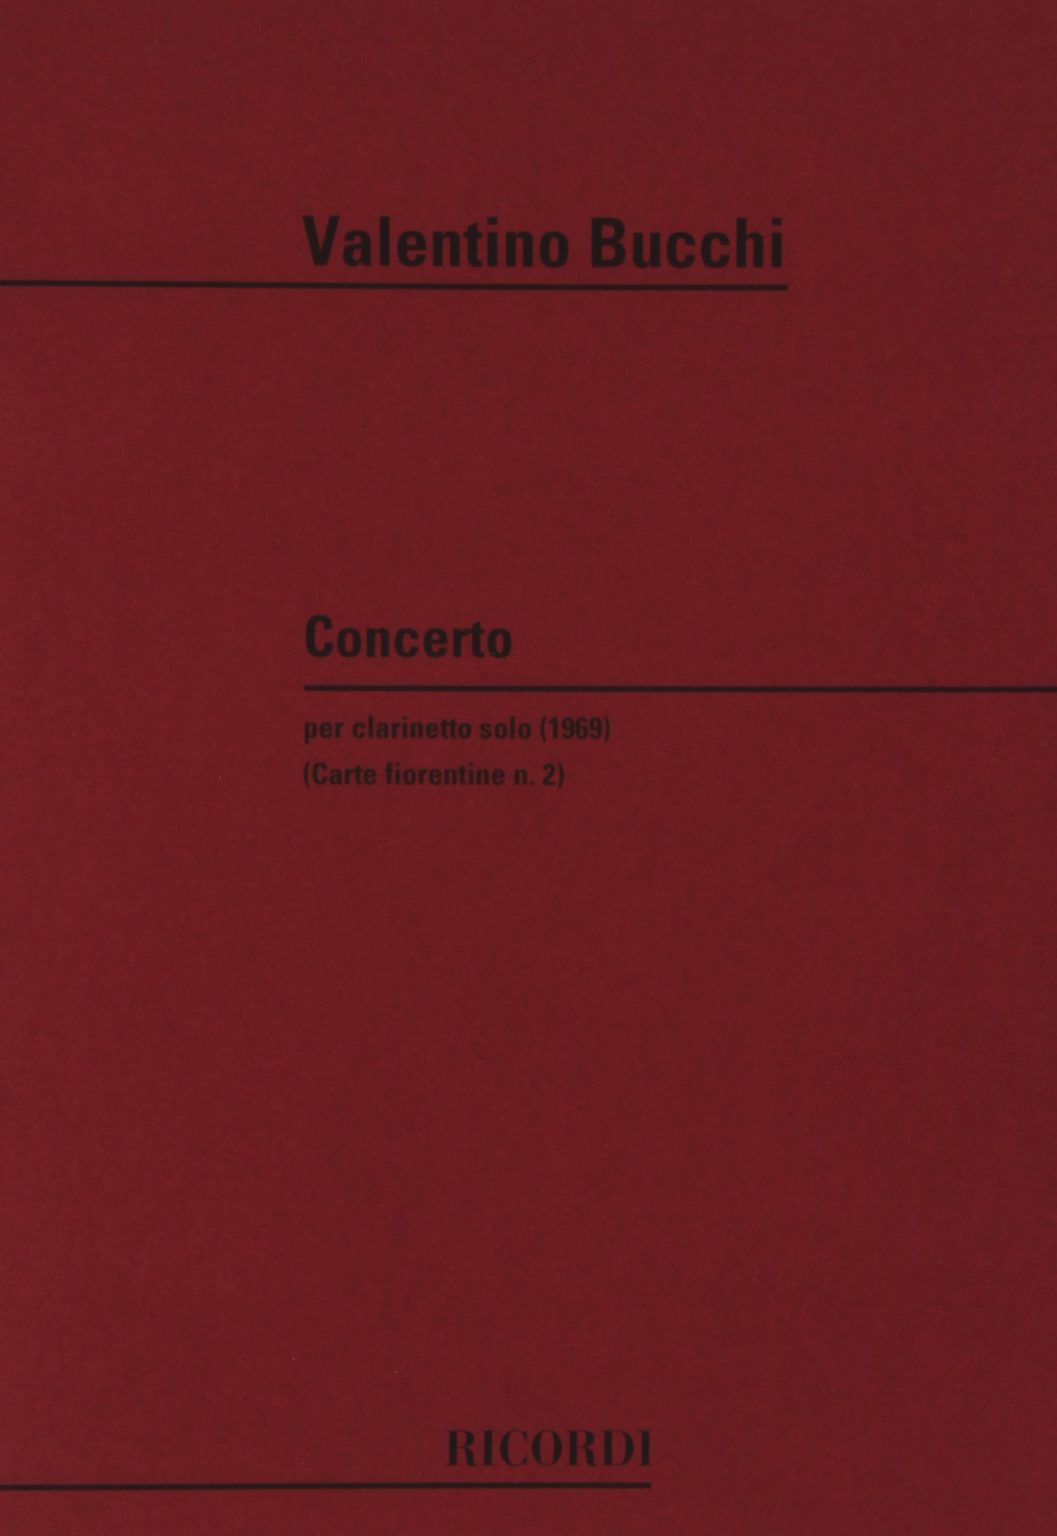 Concerto (1969) para clarinete solo. Valentino Bucchi